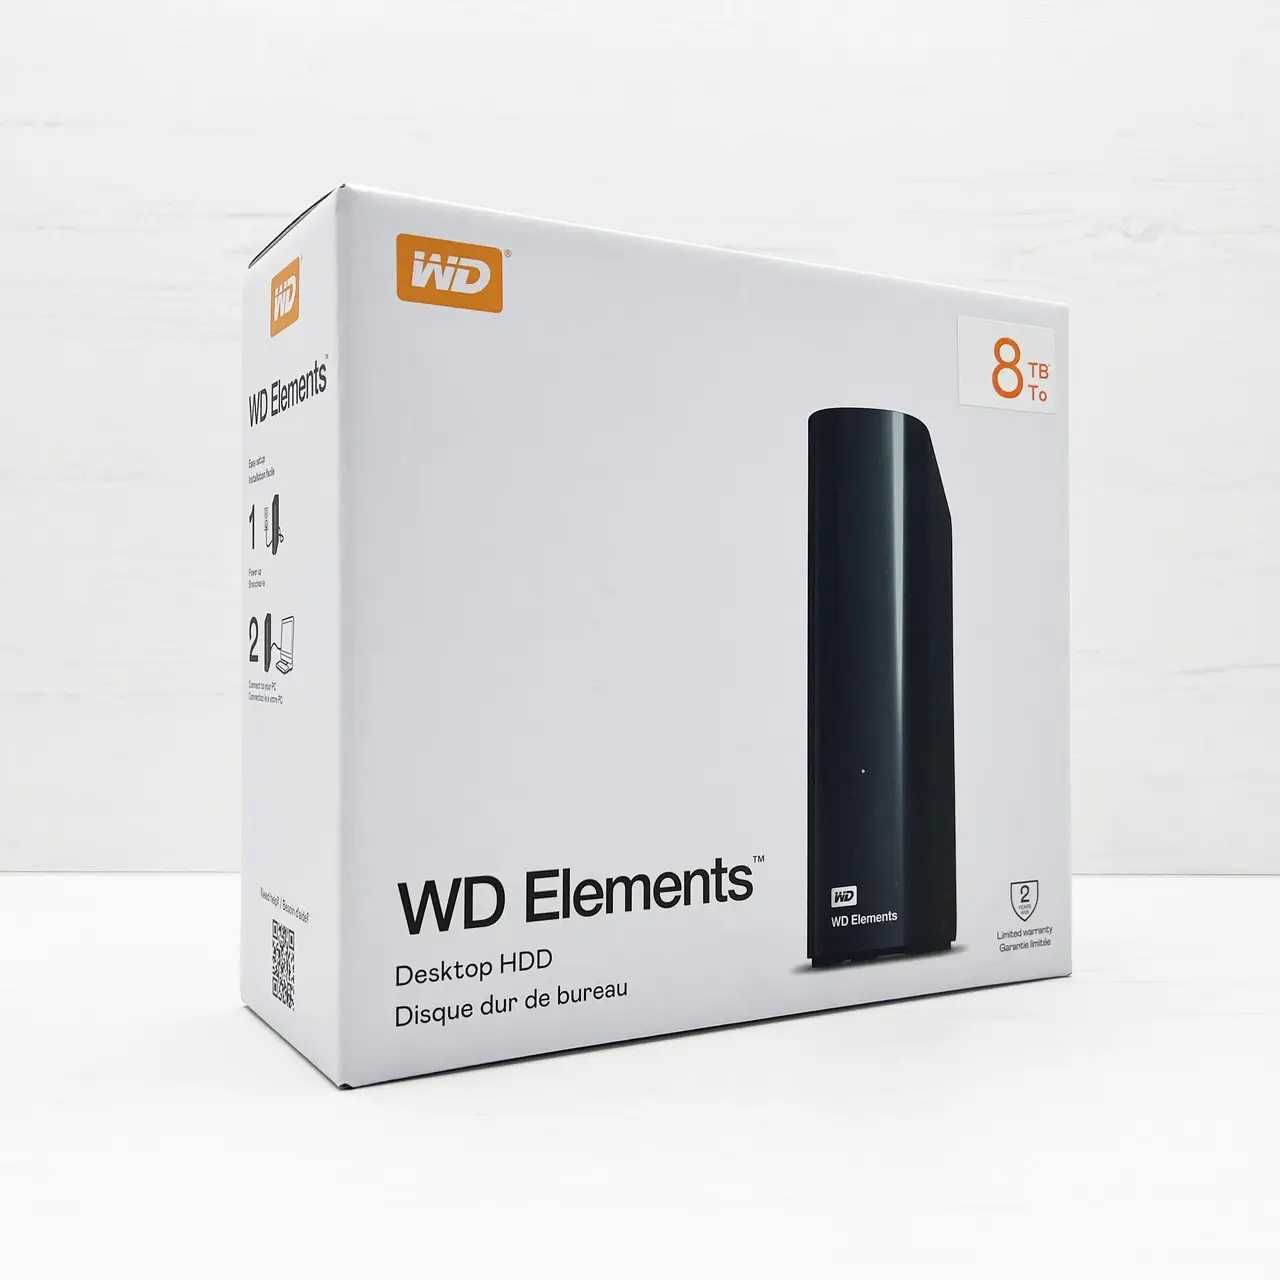 8 ТБ Внешний HDD WD Elements Desktop